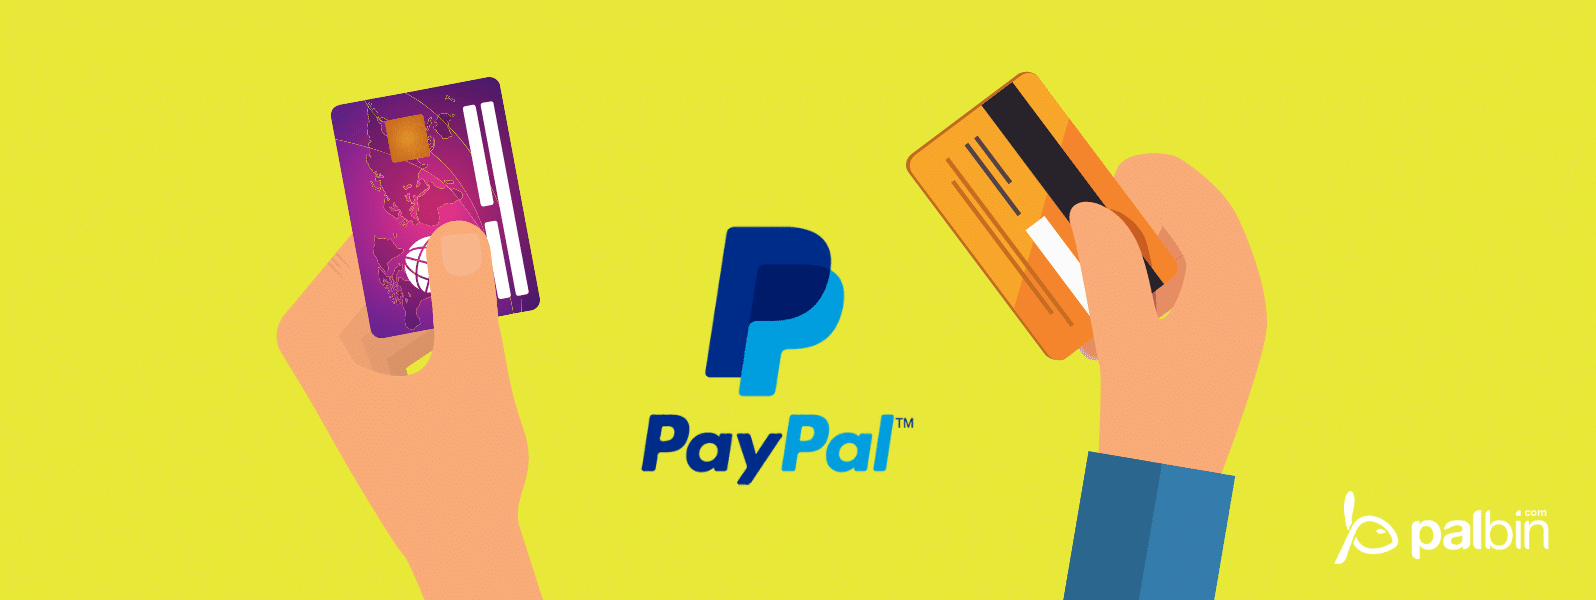 📕 Ya se puede pagar con PayPal en las tiendas y comercios físicos (offline)